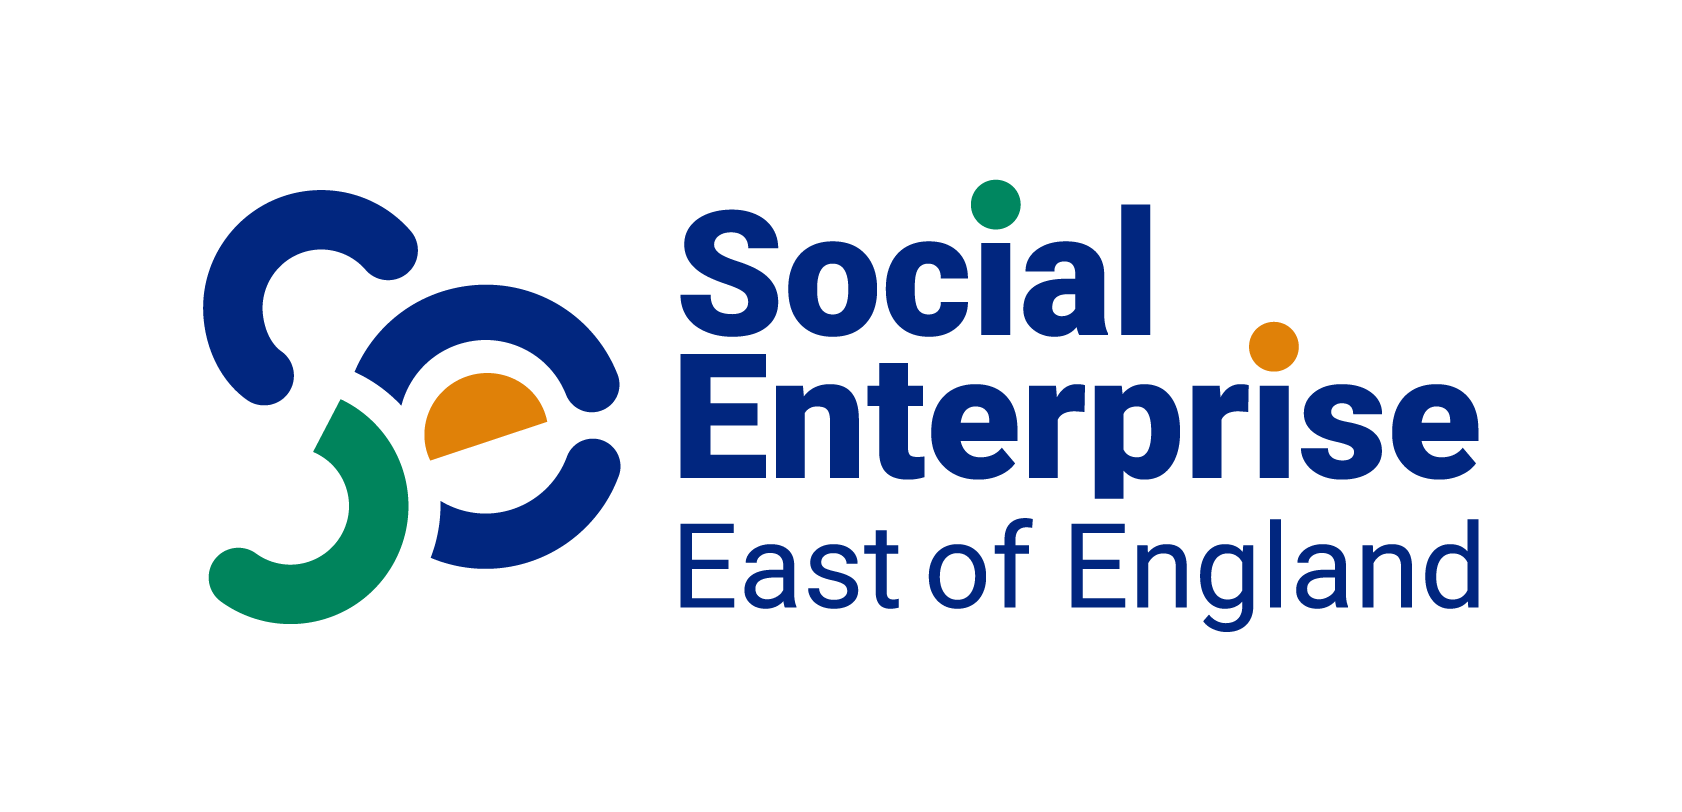 Social Enterprise East of England